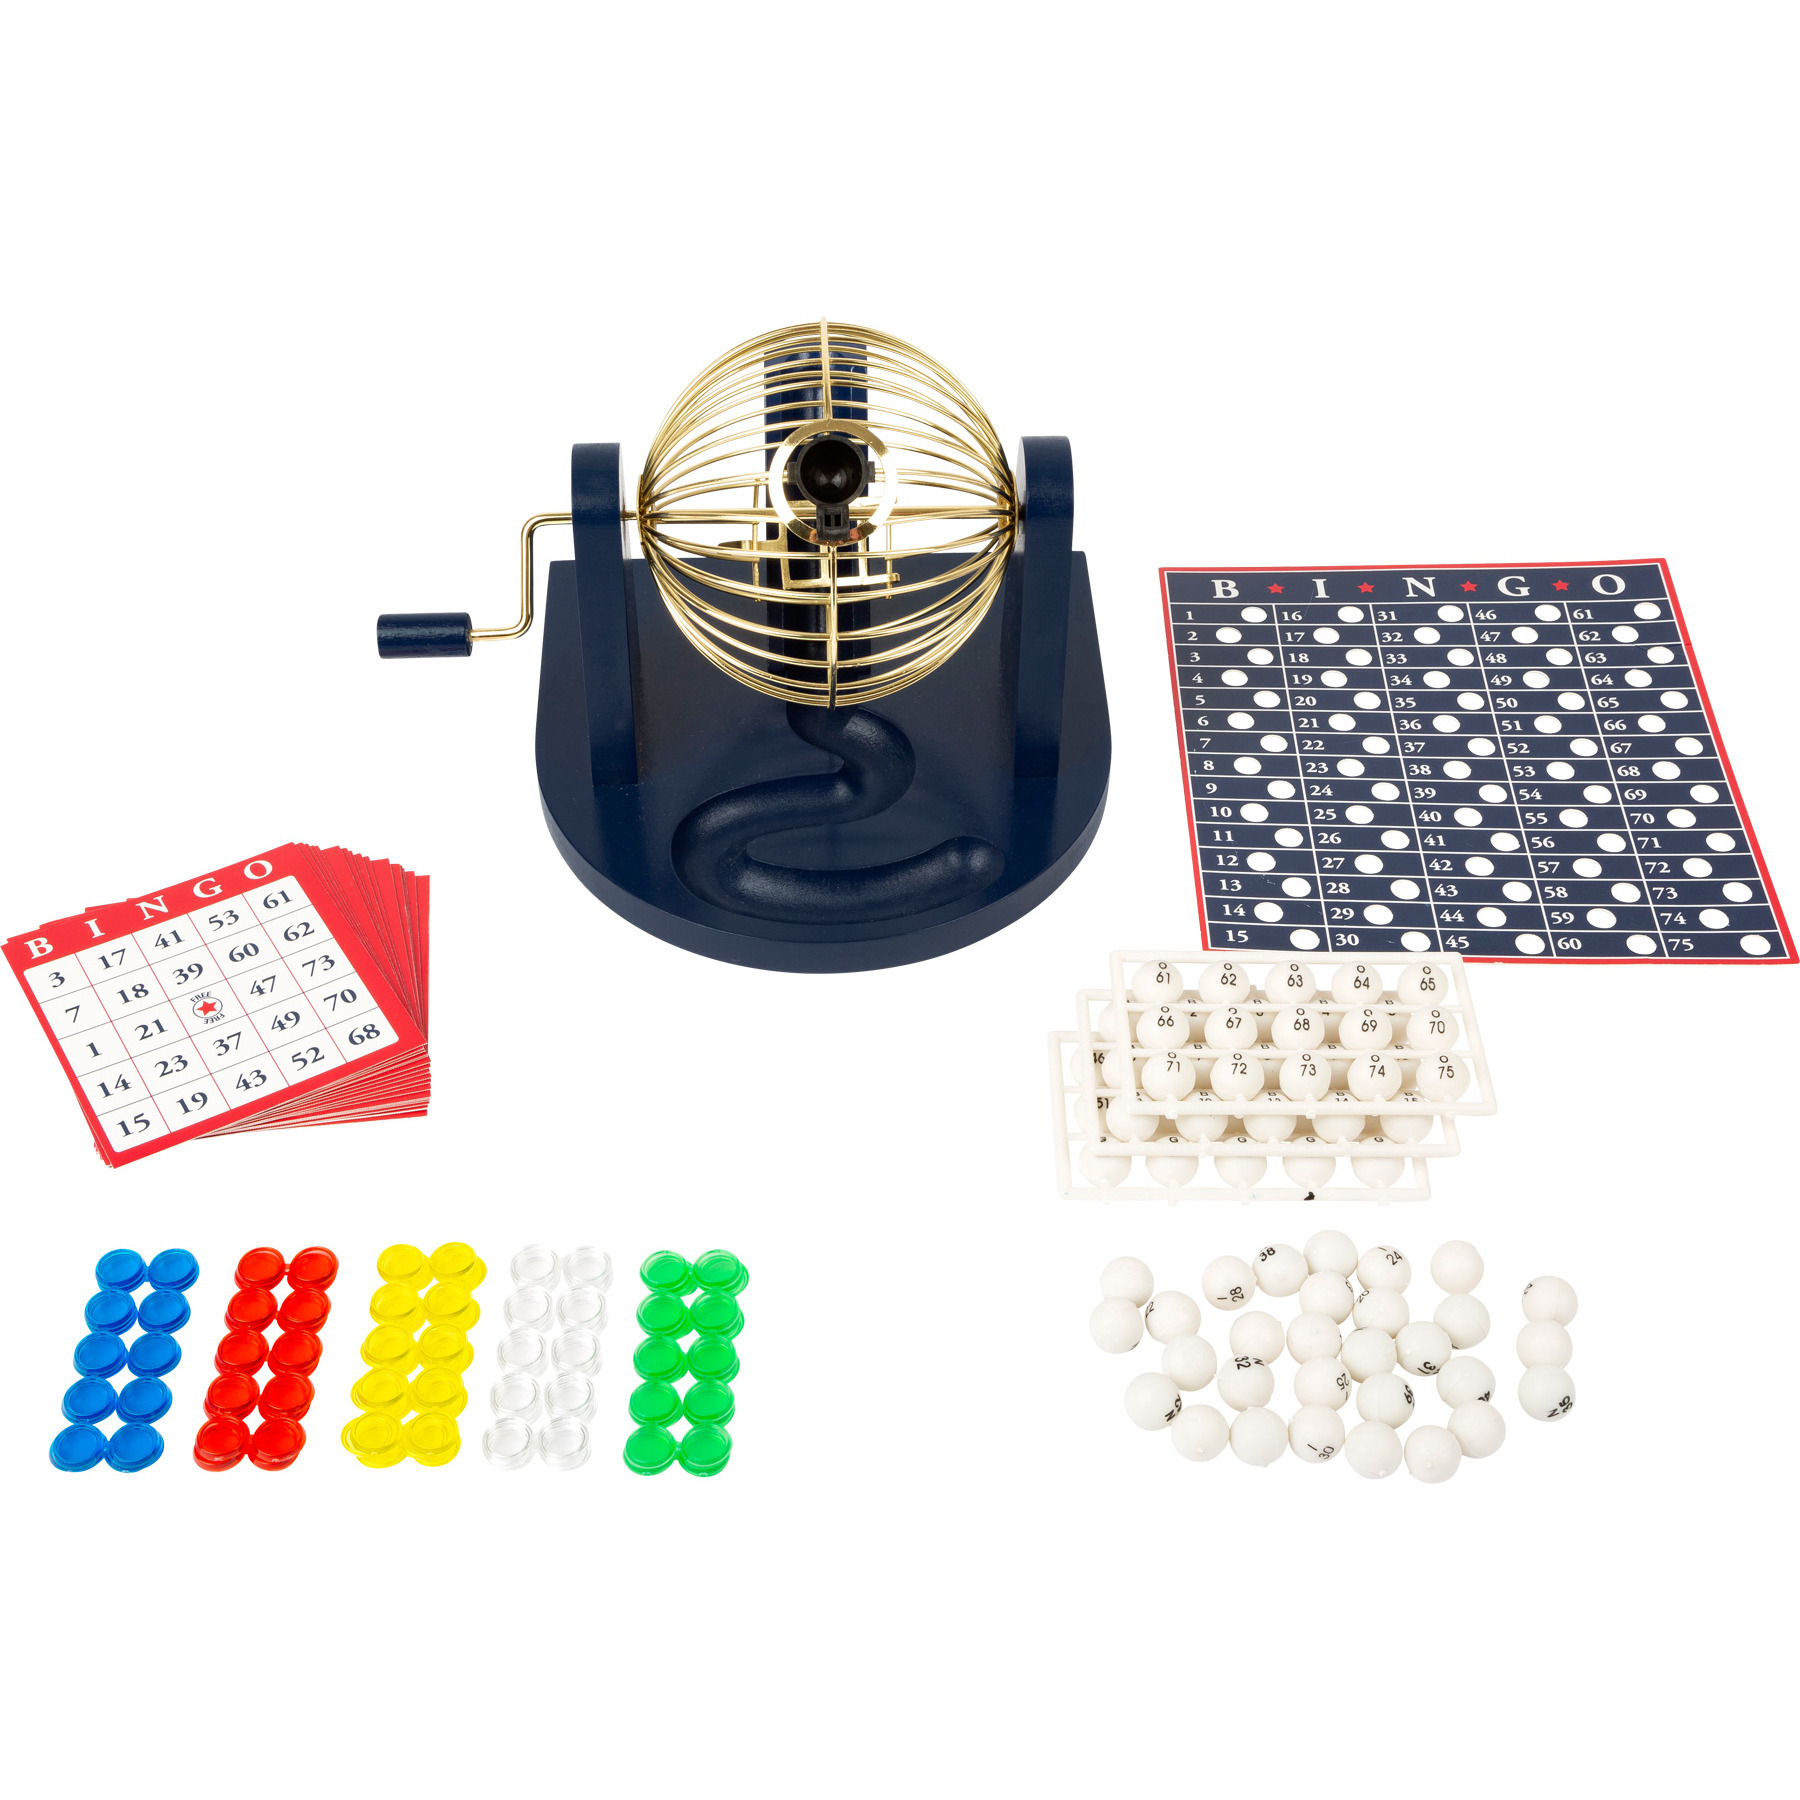 Bingo spel blauw-goud-wit complete set 21 cm nummers 1-75 met molen en bingokaarten